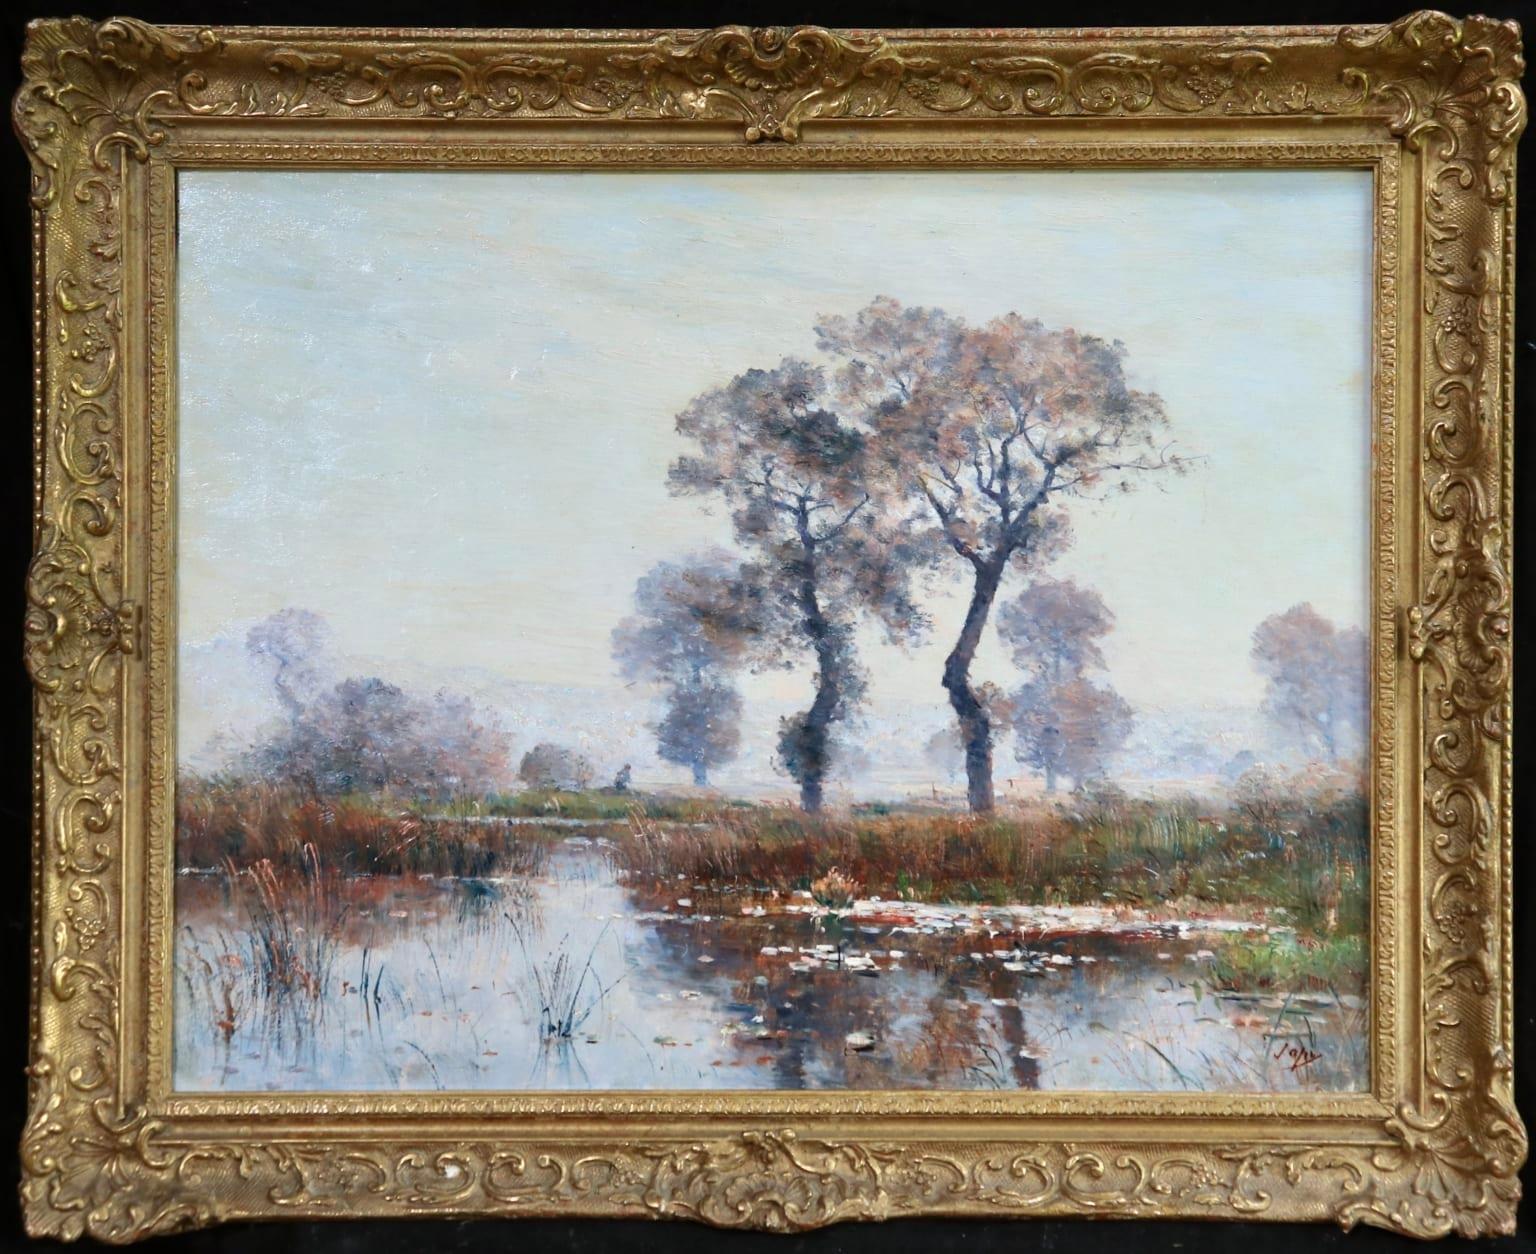 Nympheas on Lake - Saint-Bonnet-les-Oules - Barbizon Landscape Oil by Louis Japy - Painting by Louis Aimé Japy